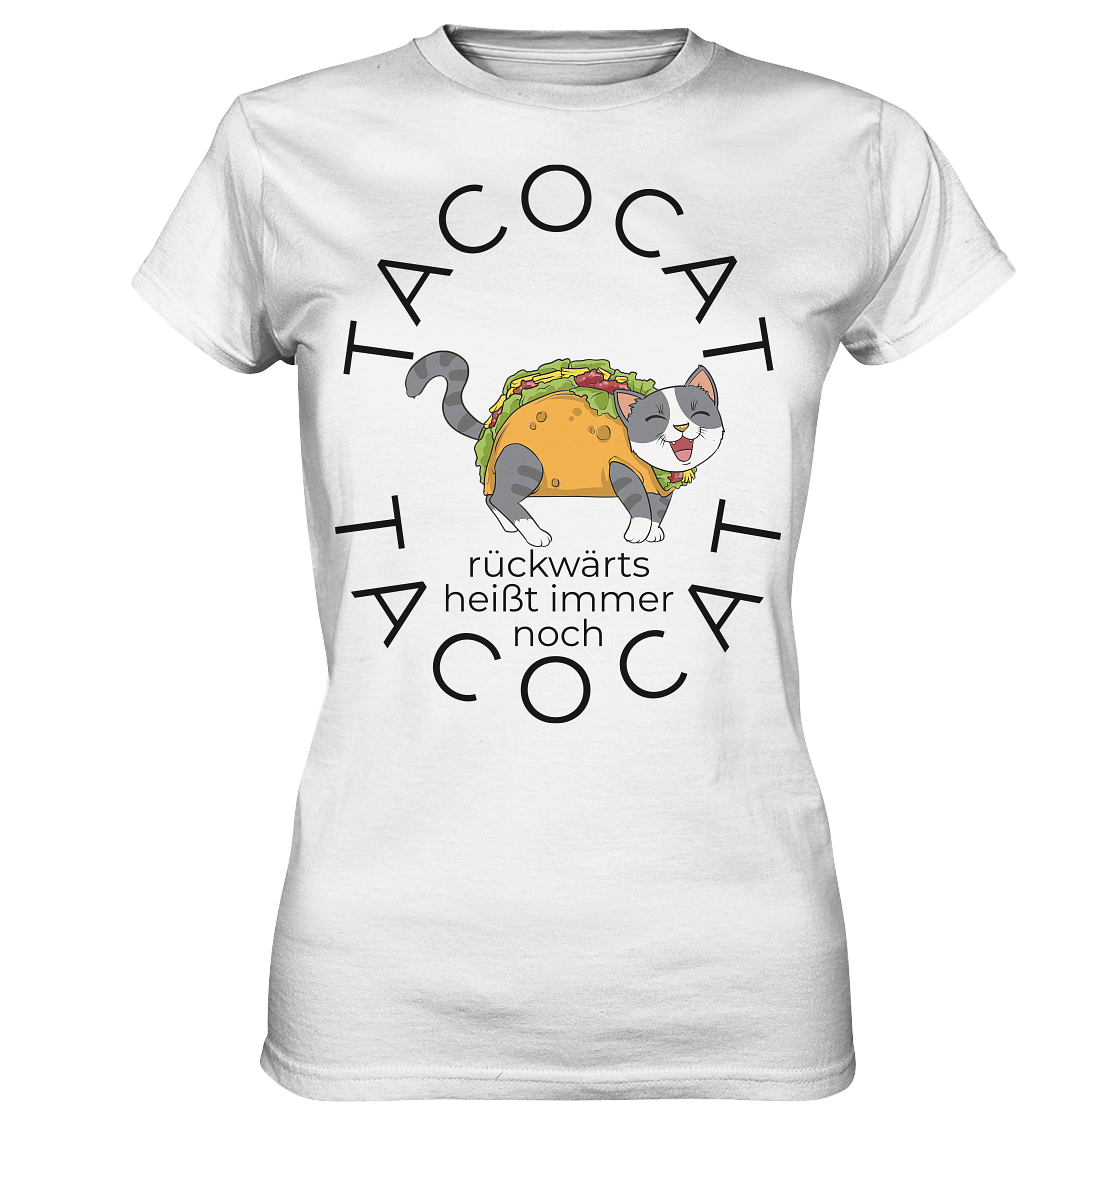 TACOCAT heißt rückwärts immer noch TACOCAT - Ladies Premium Shirt